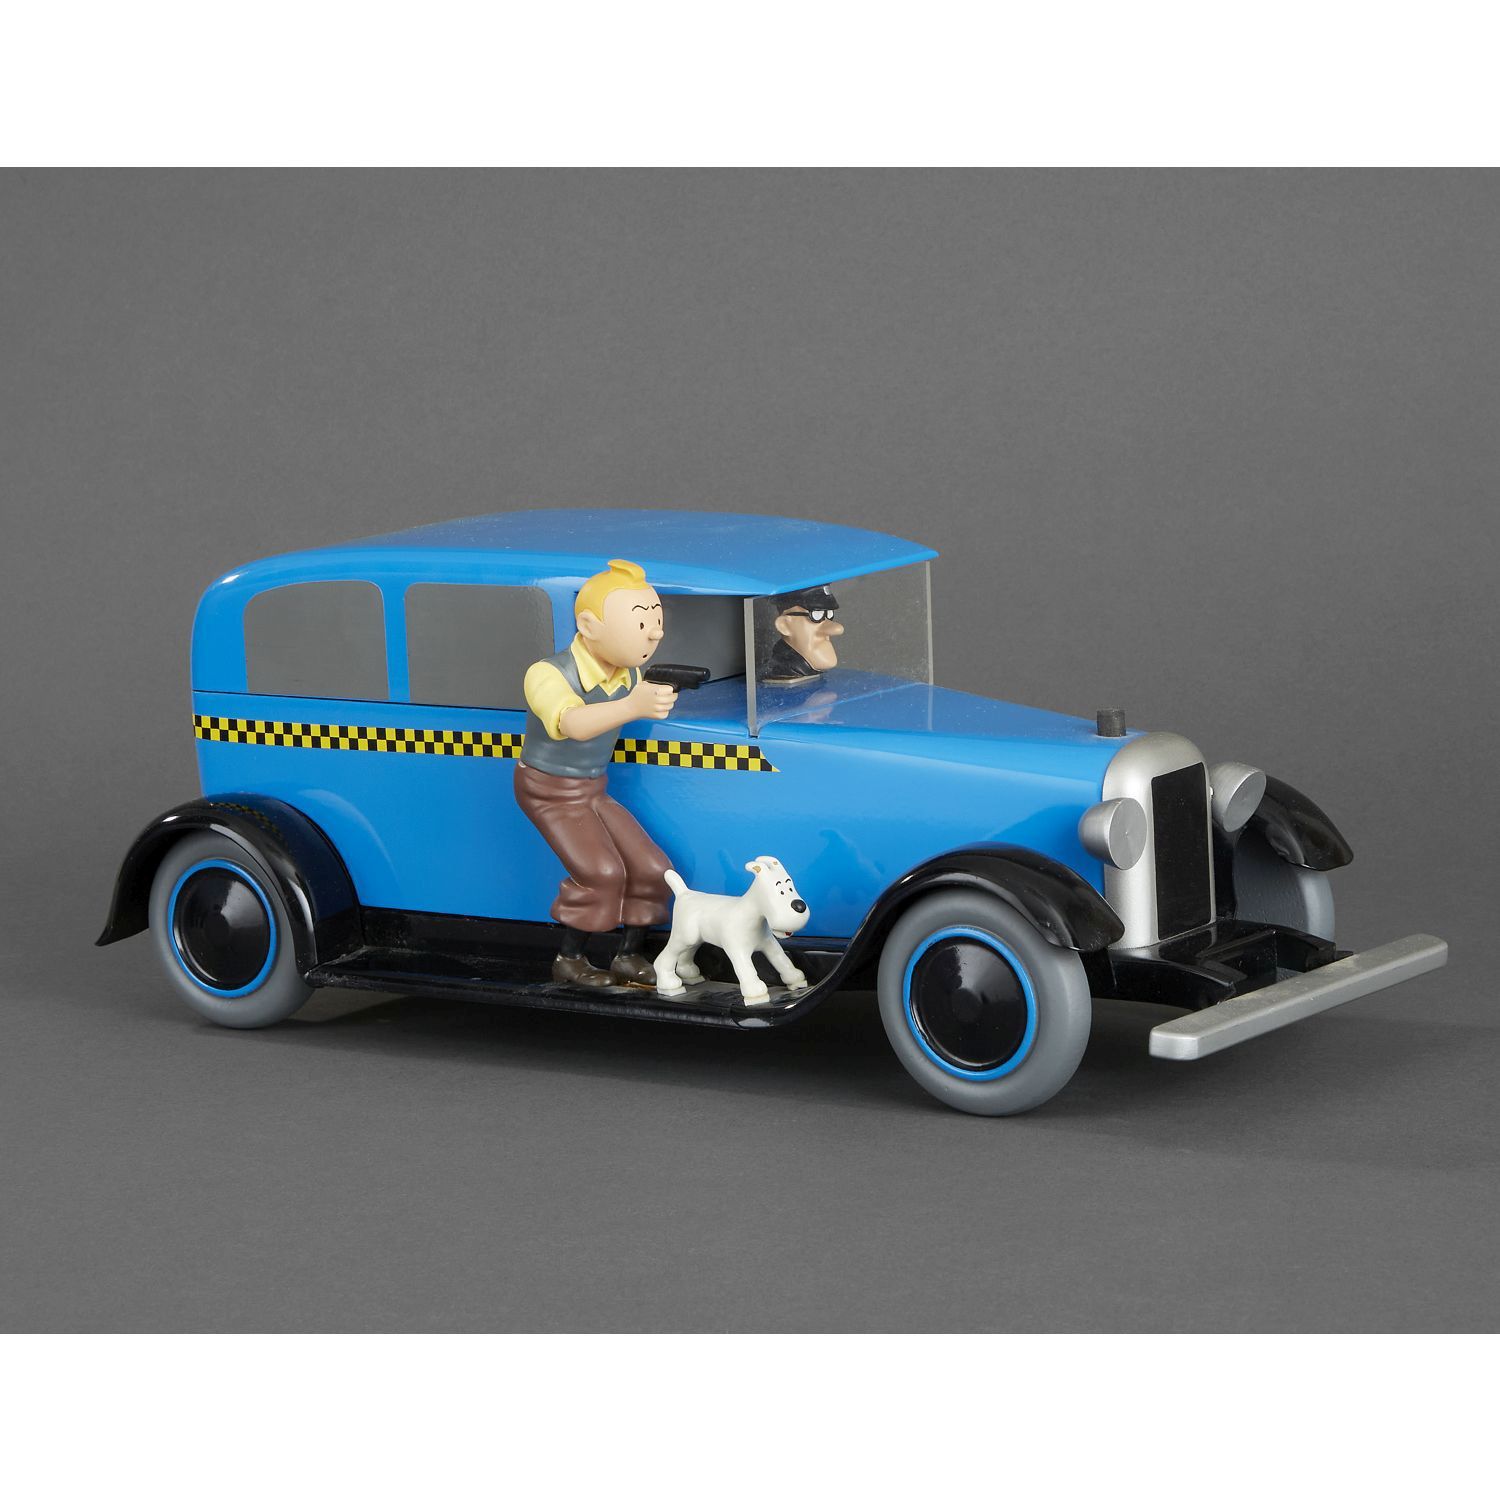 Null AROUTCHEFF, Michel (geb. 1946) / Moulinsart
Das Tintin-Taxi
Entnommen aus d&hellip;